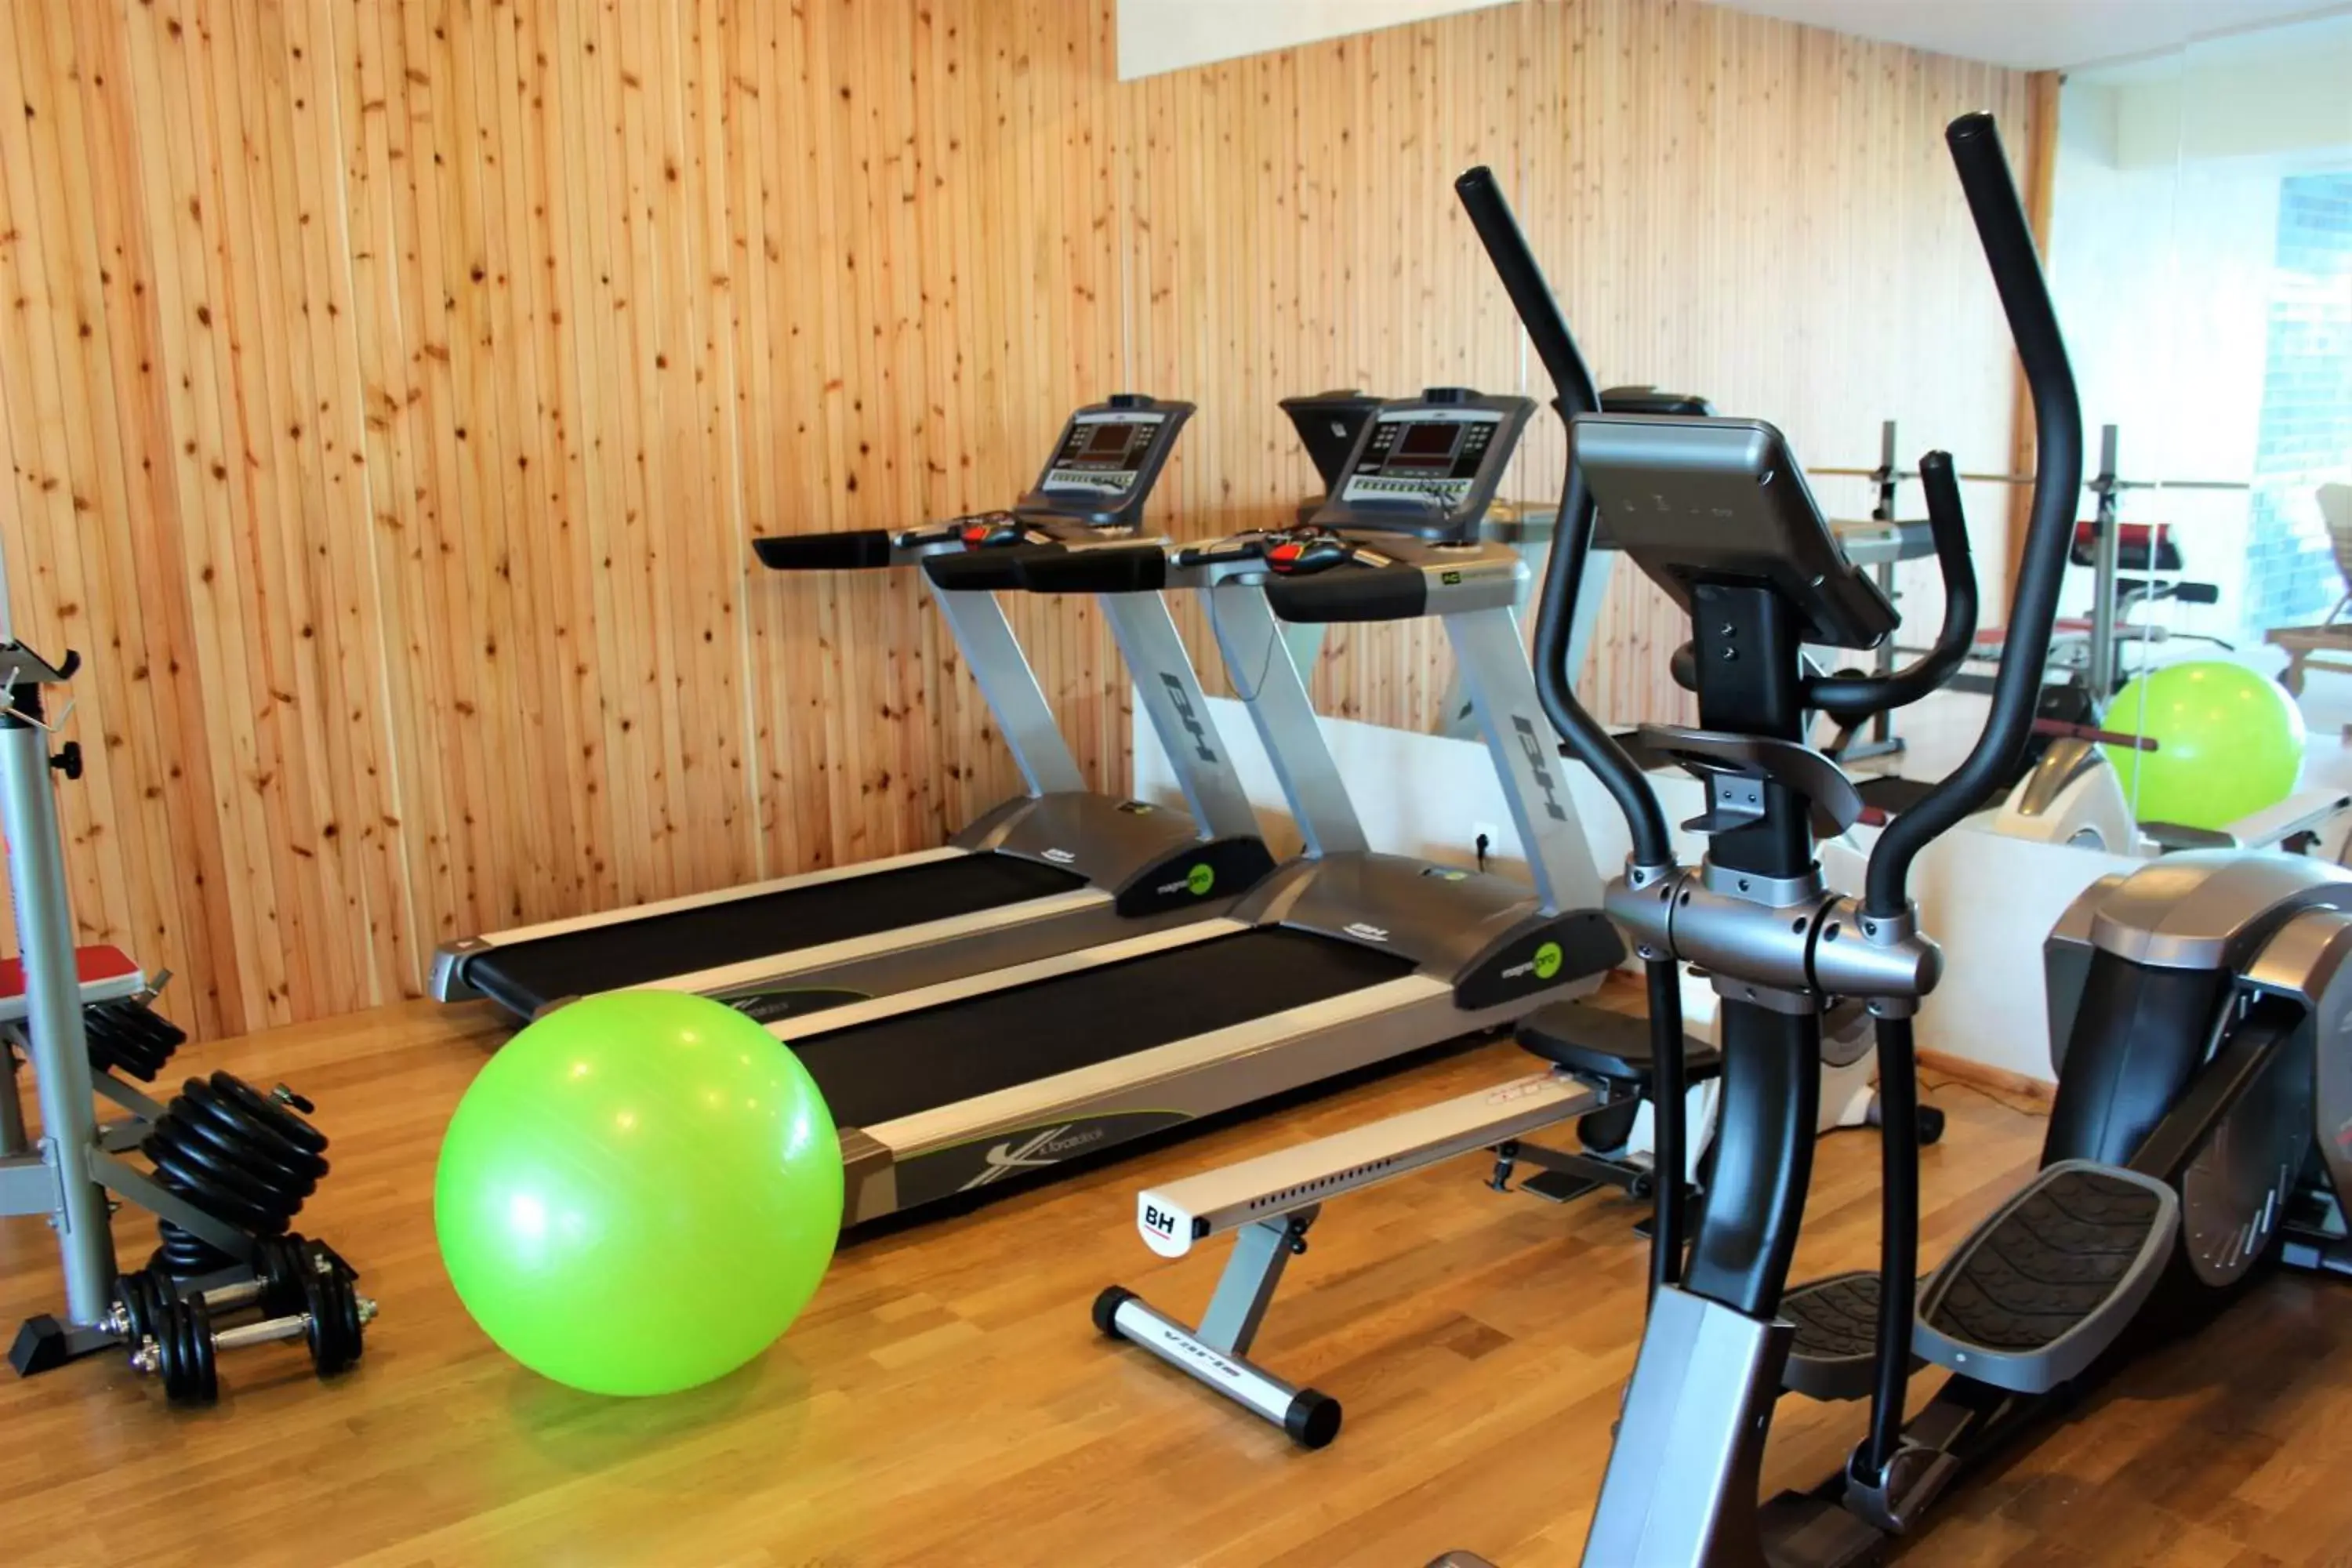 Fitness centre/facilities, Fitness Center/Facilities in Pedras do Mar Resort & Spa